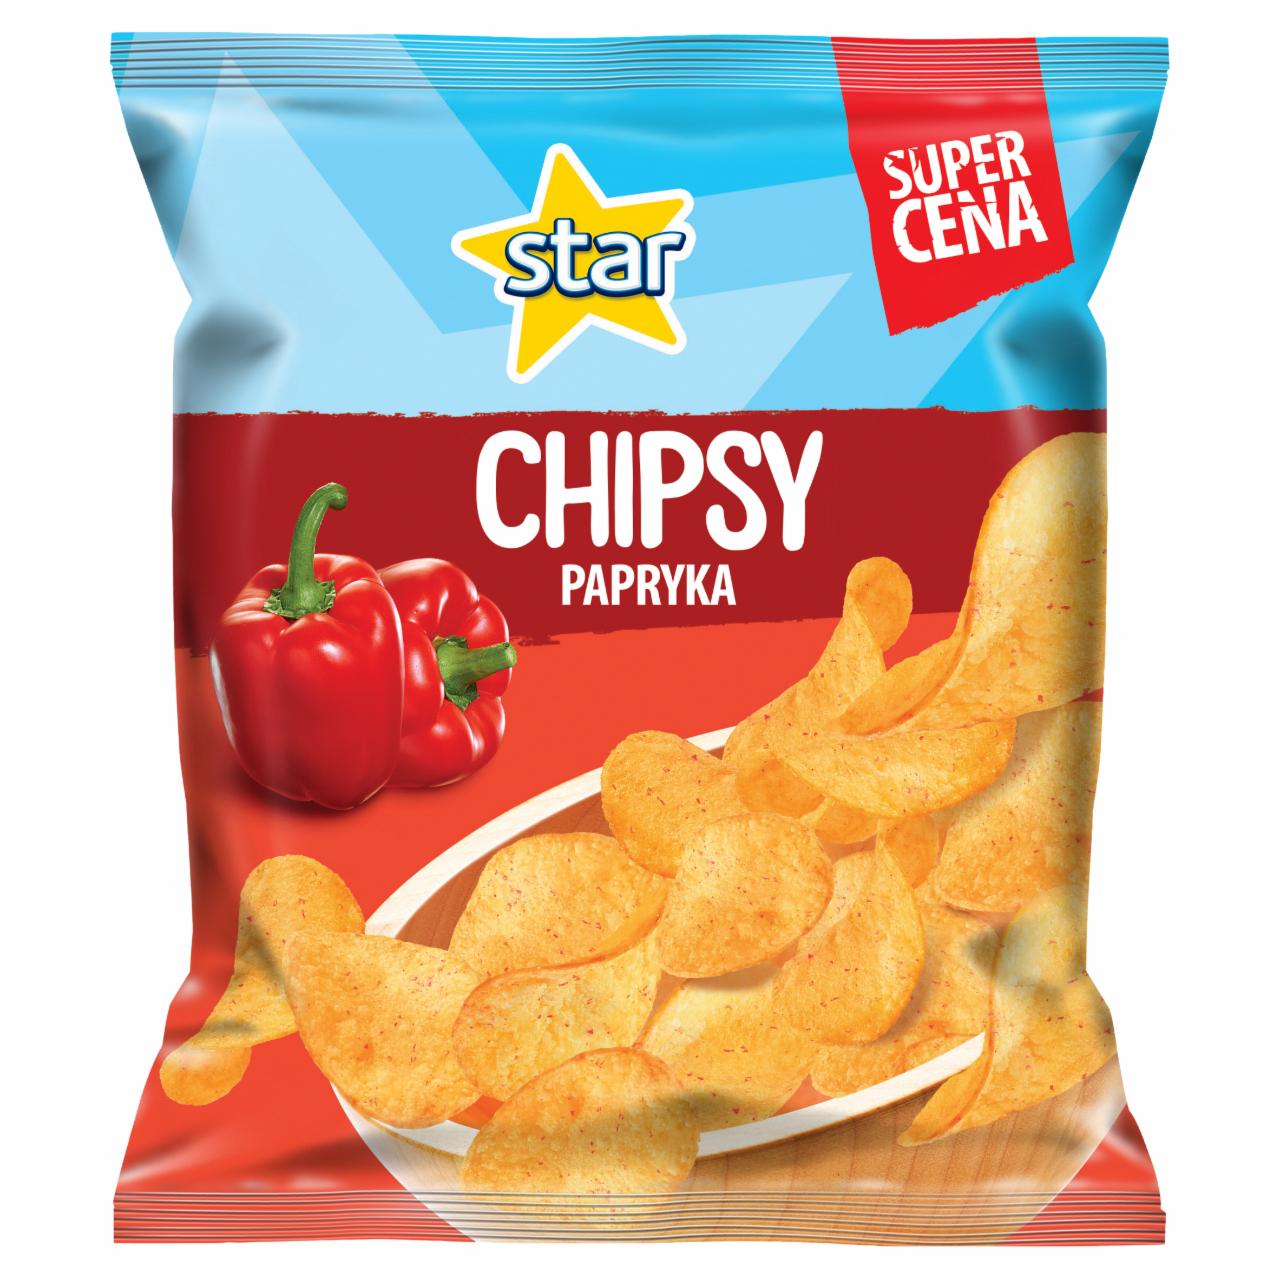 Zdjęcia - Star Chipsy o smaku papryka 22 g